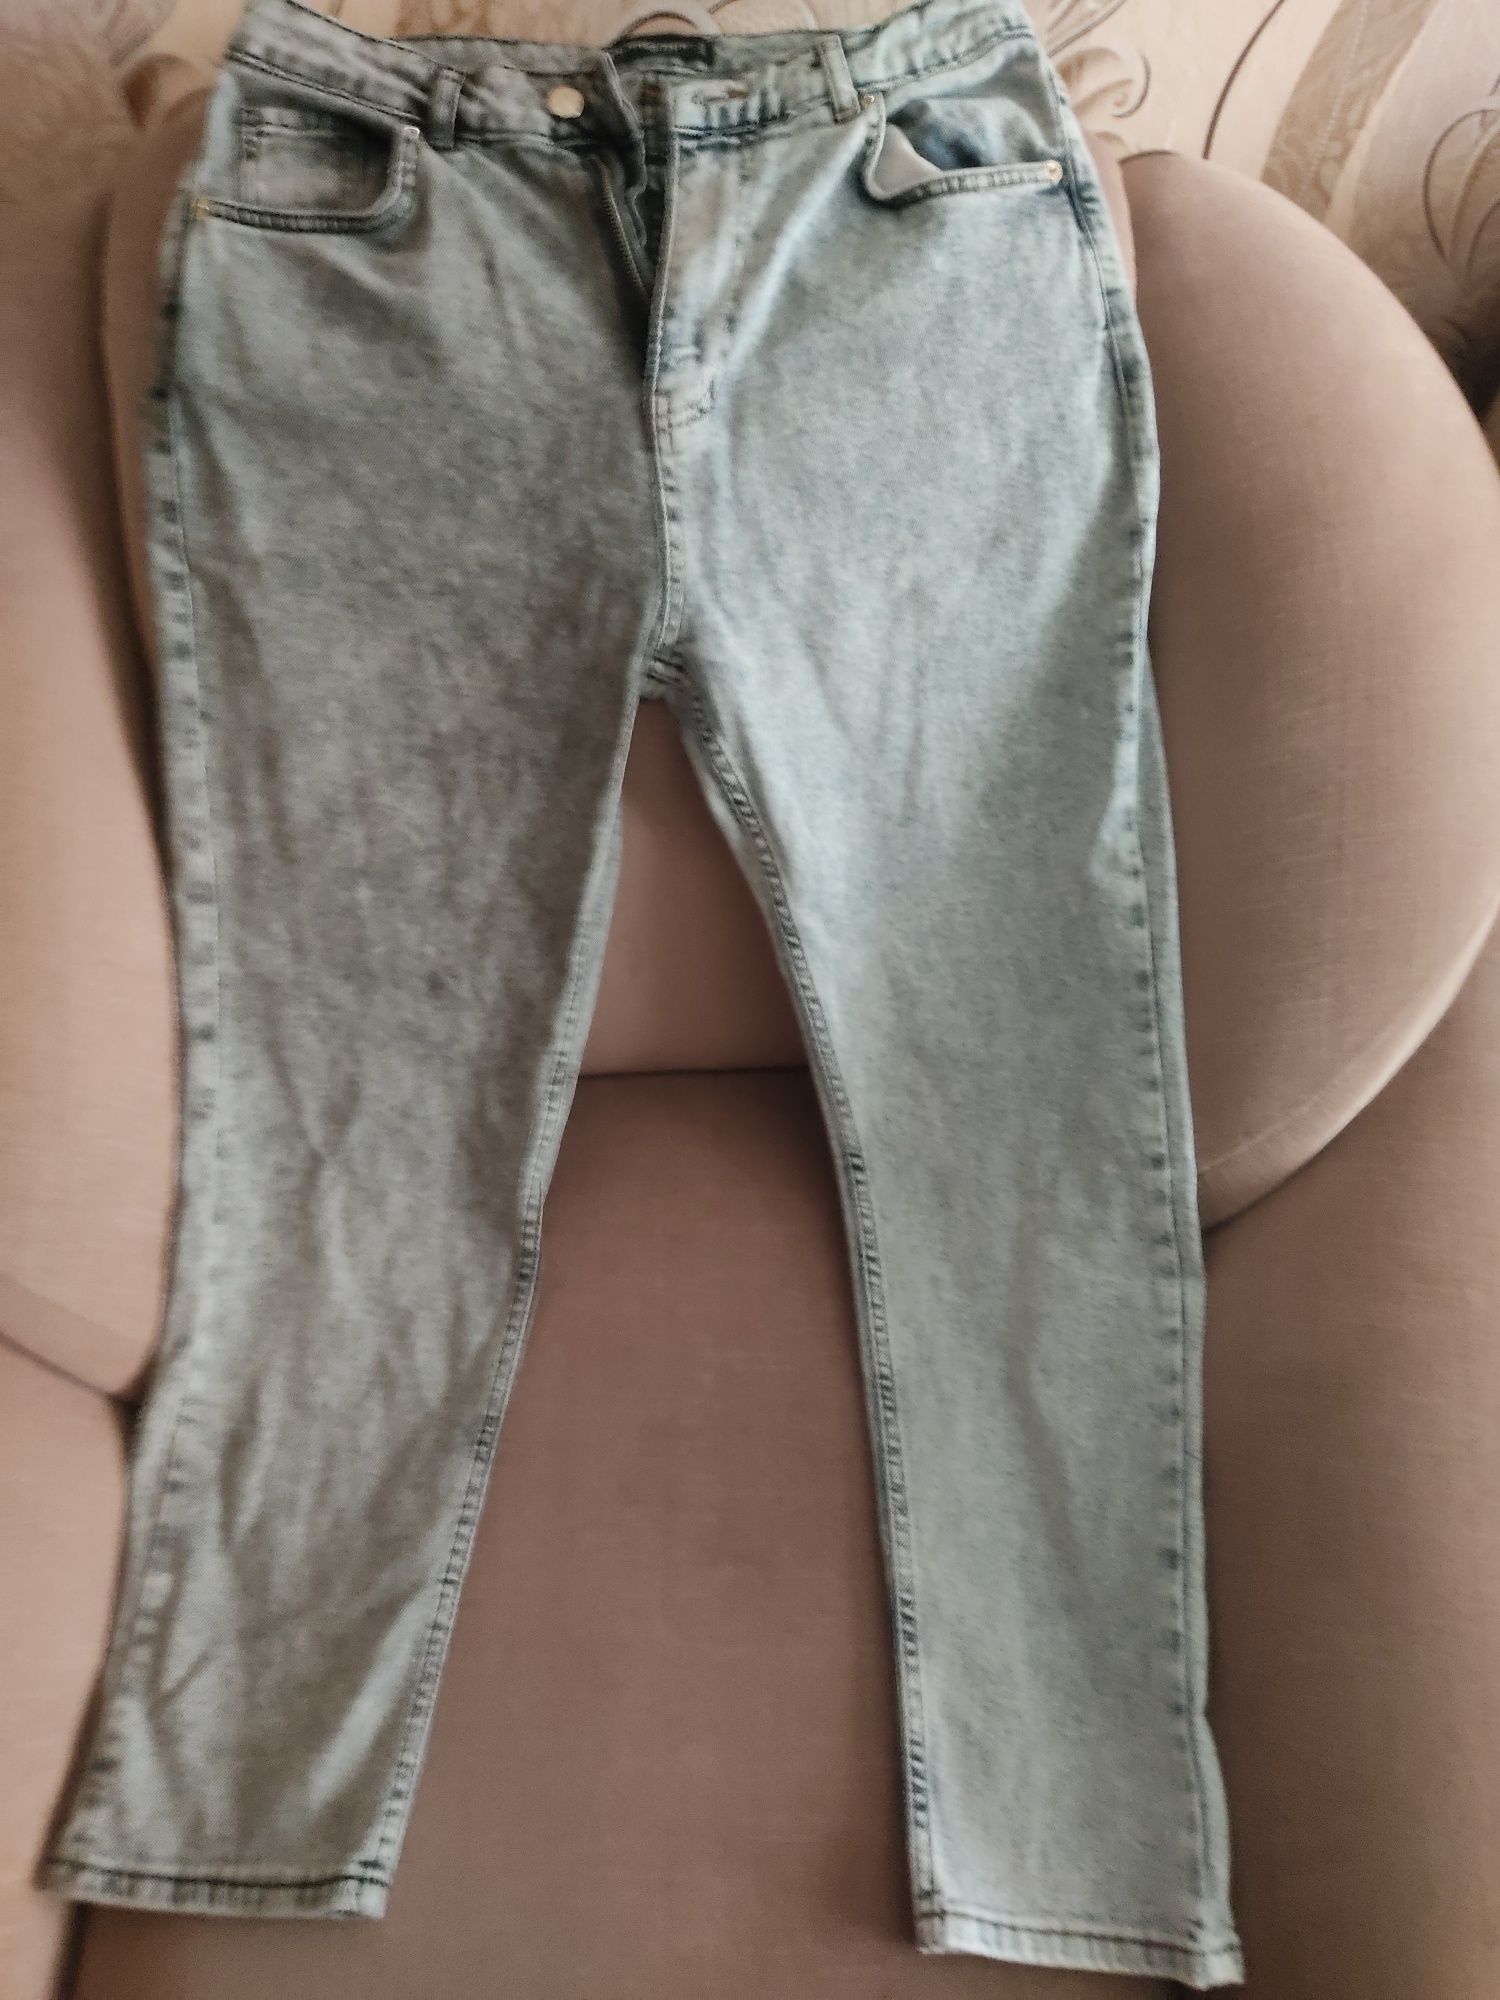 Продам джинсы женские